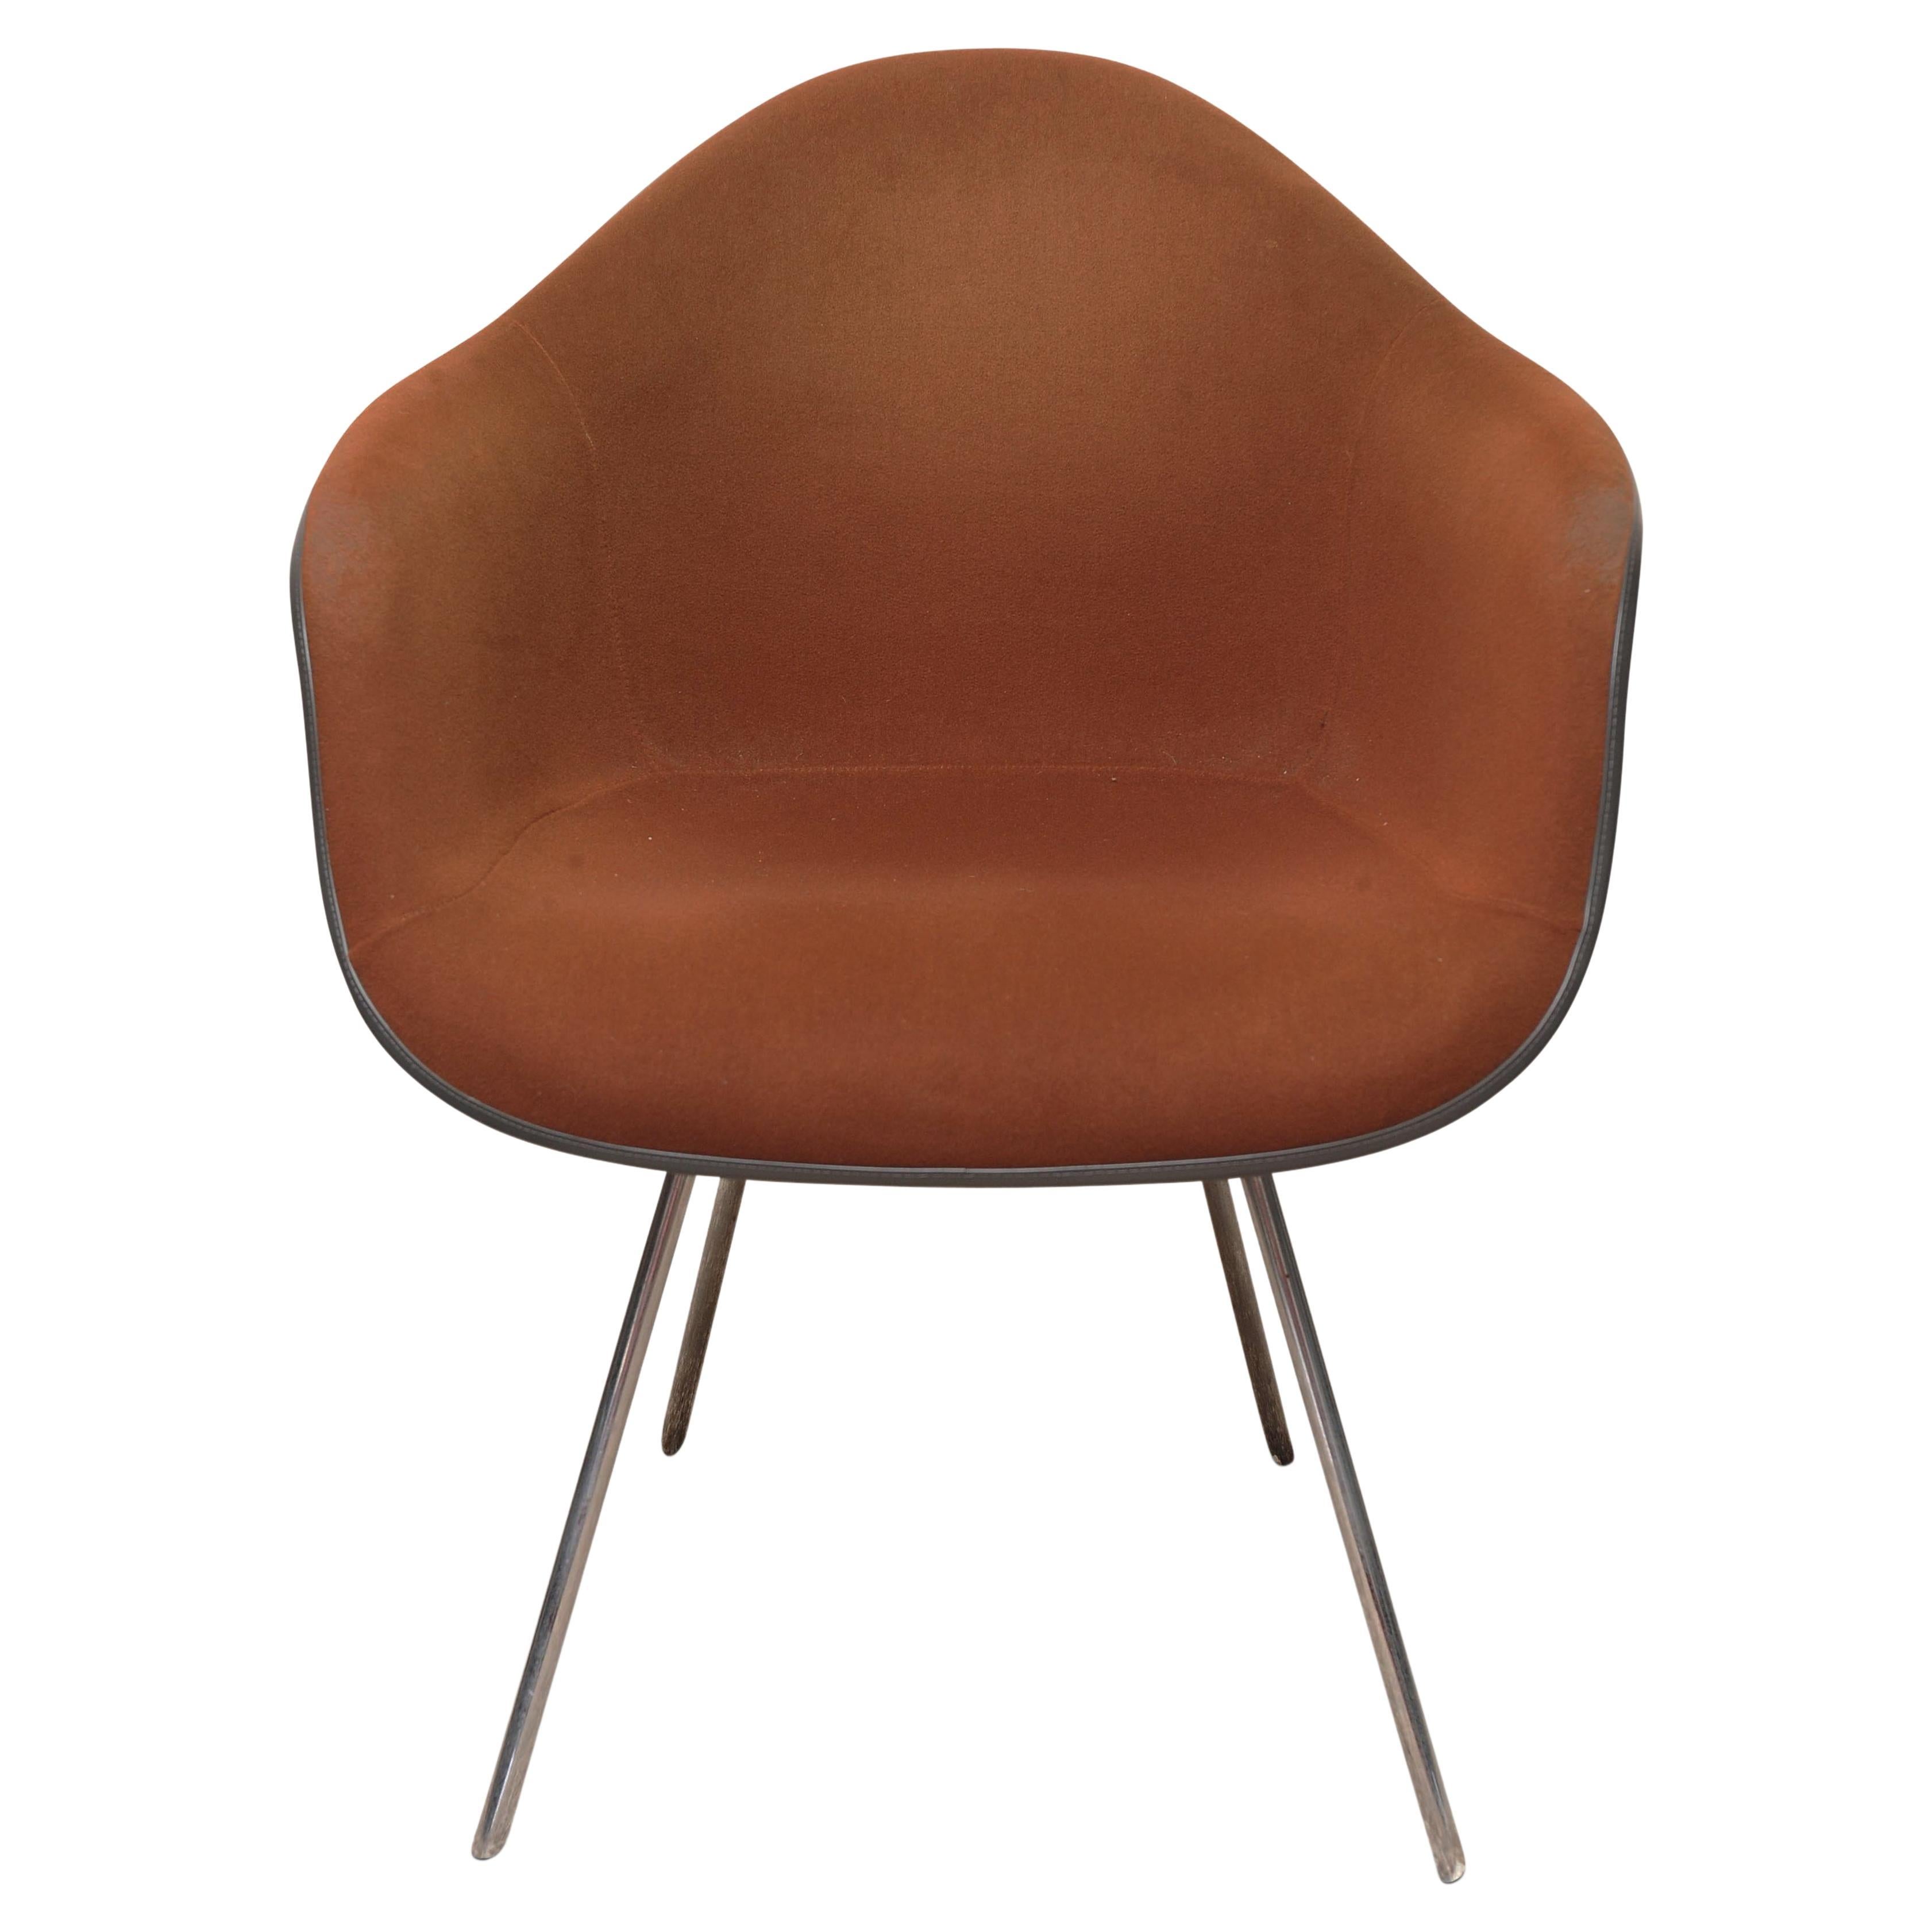 Originaler DAX-Stuhl von Charles & Ray Eames für Herman Miller, Labelled, Mid-Century